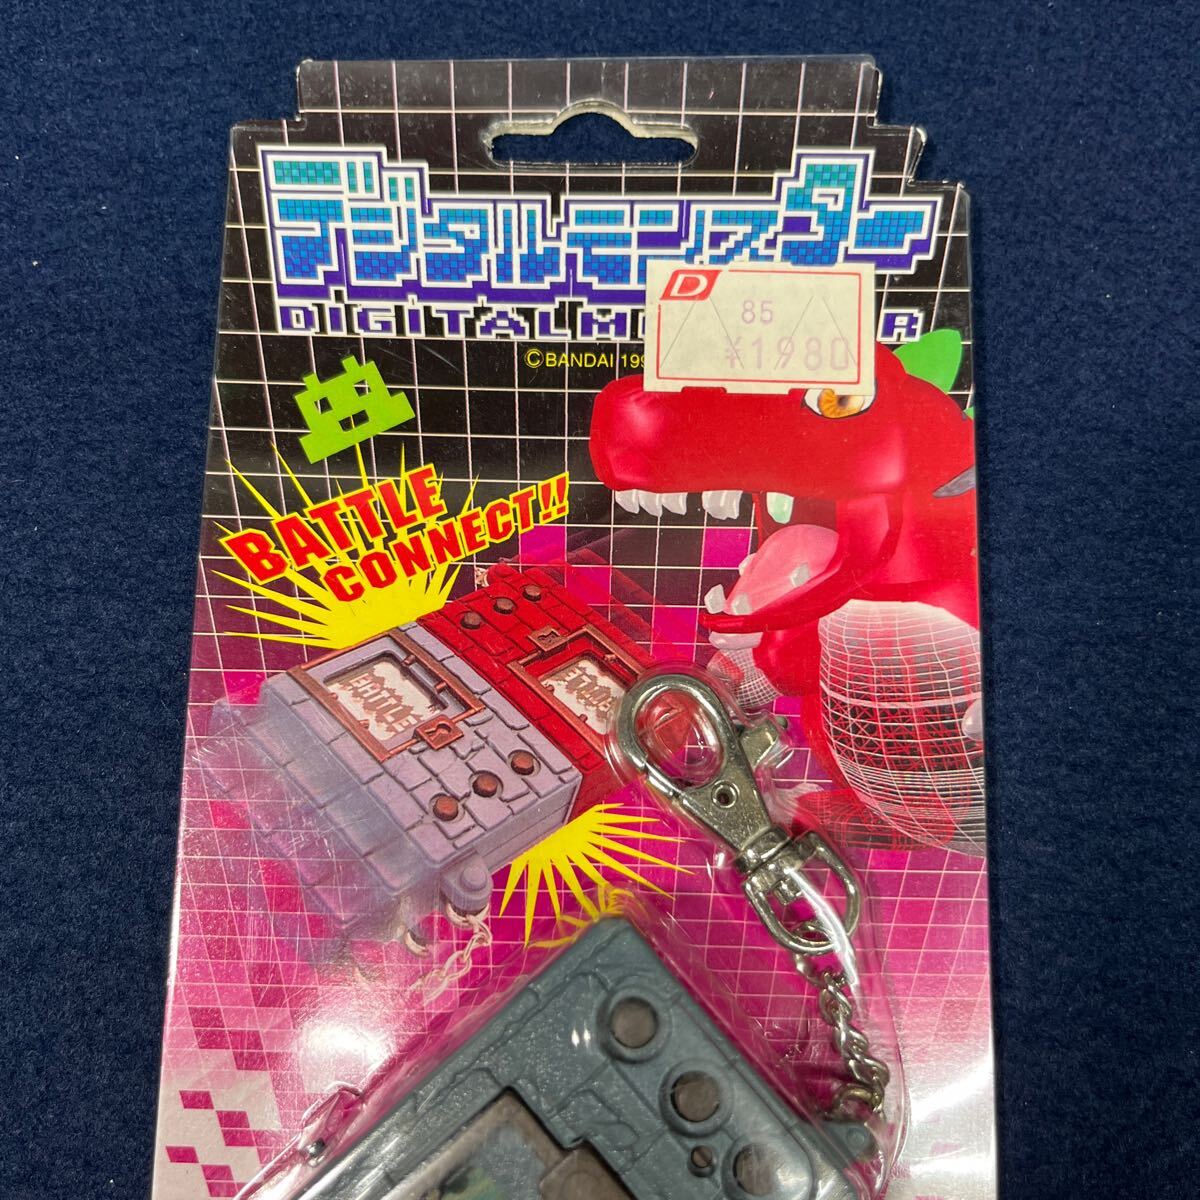  не использовался товар BANDAI Bandai Digital Monster 1997 год производства первое поколение digimon подлинная вещь игрушка игра 2 шт. комплект 